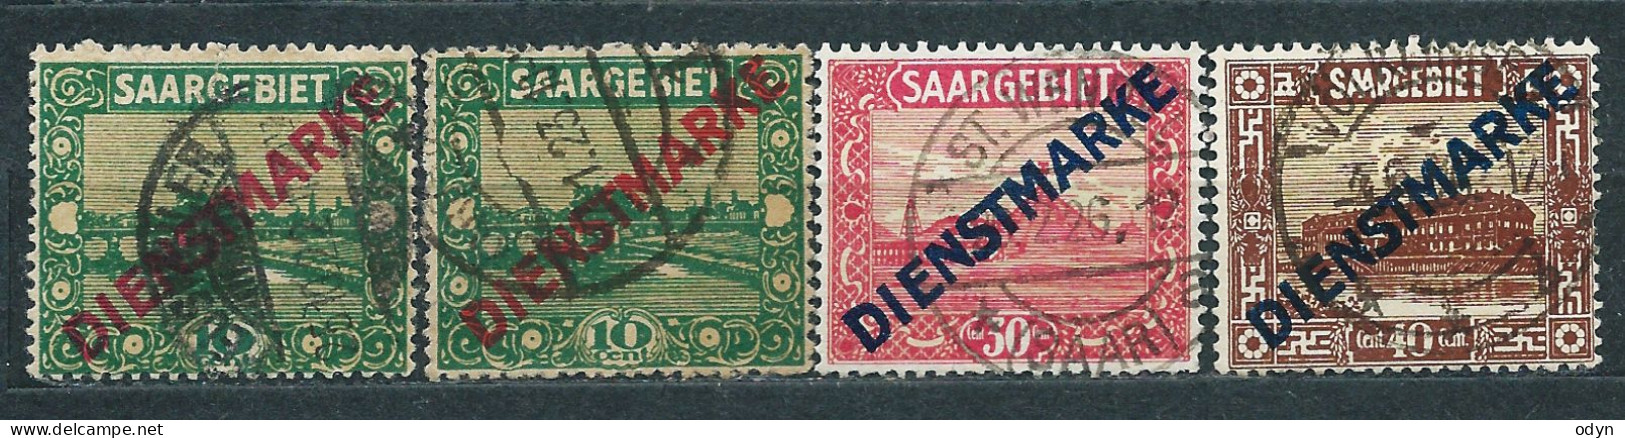 Saargebiet Dienstmarken 1922, Complete Set MiNr 1-11 - Unused MH * + 4 Stamps Used - Oficiales